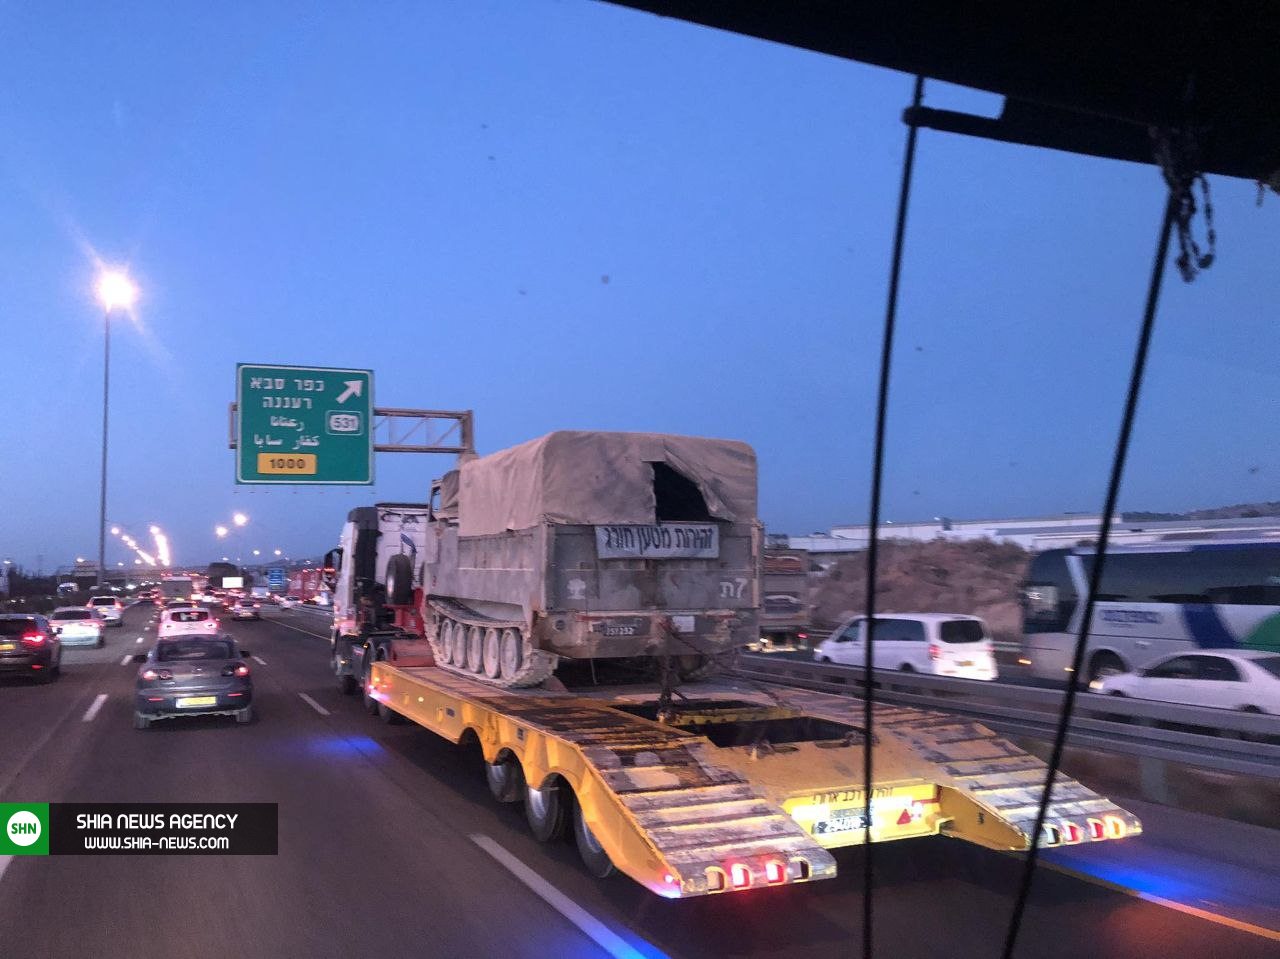 ارسال تجهیزات نظامی اسرائیل به مرزهای لبنان+ تصاویر